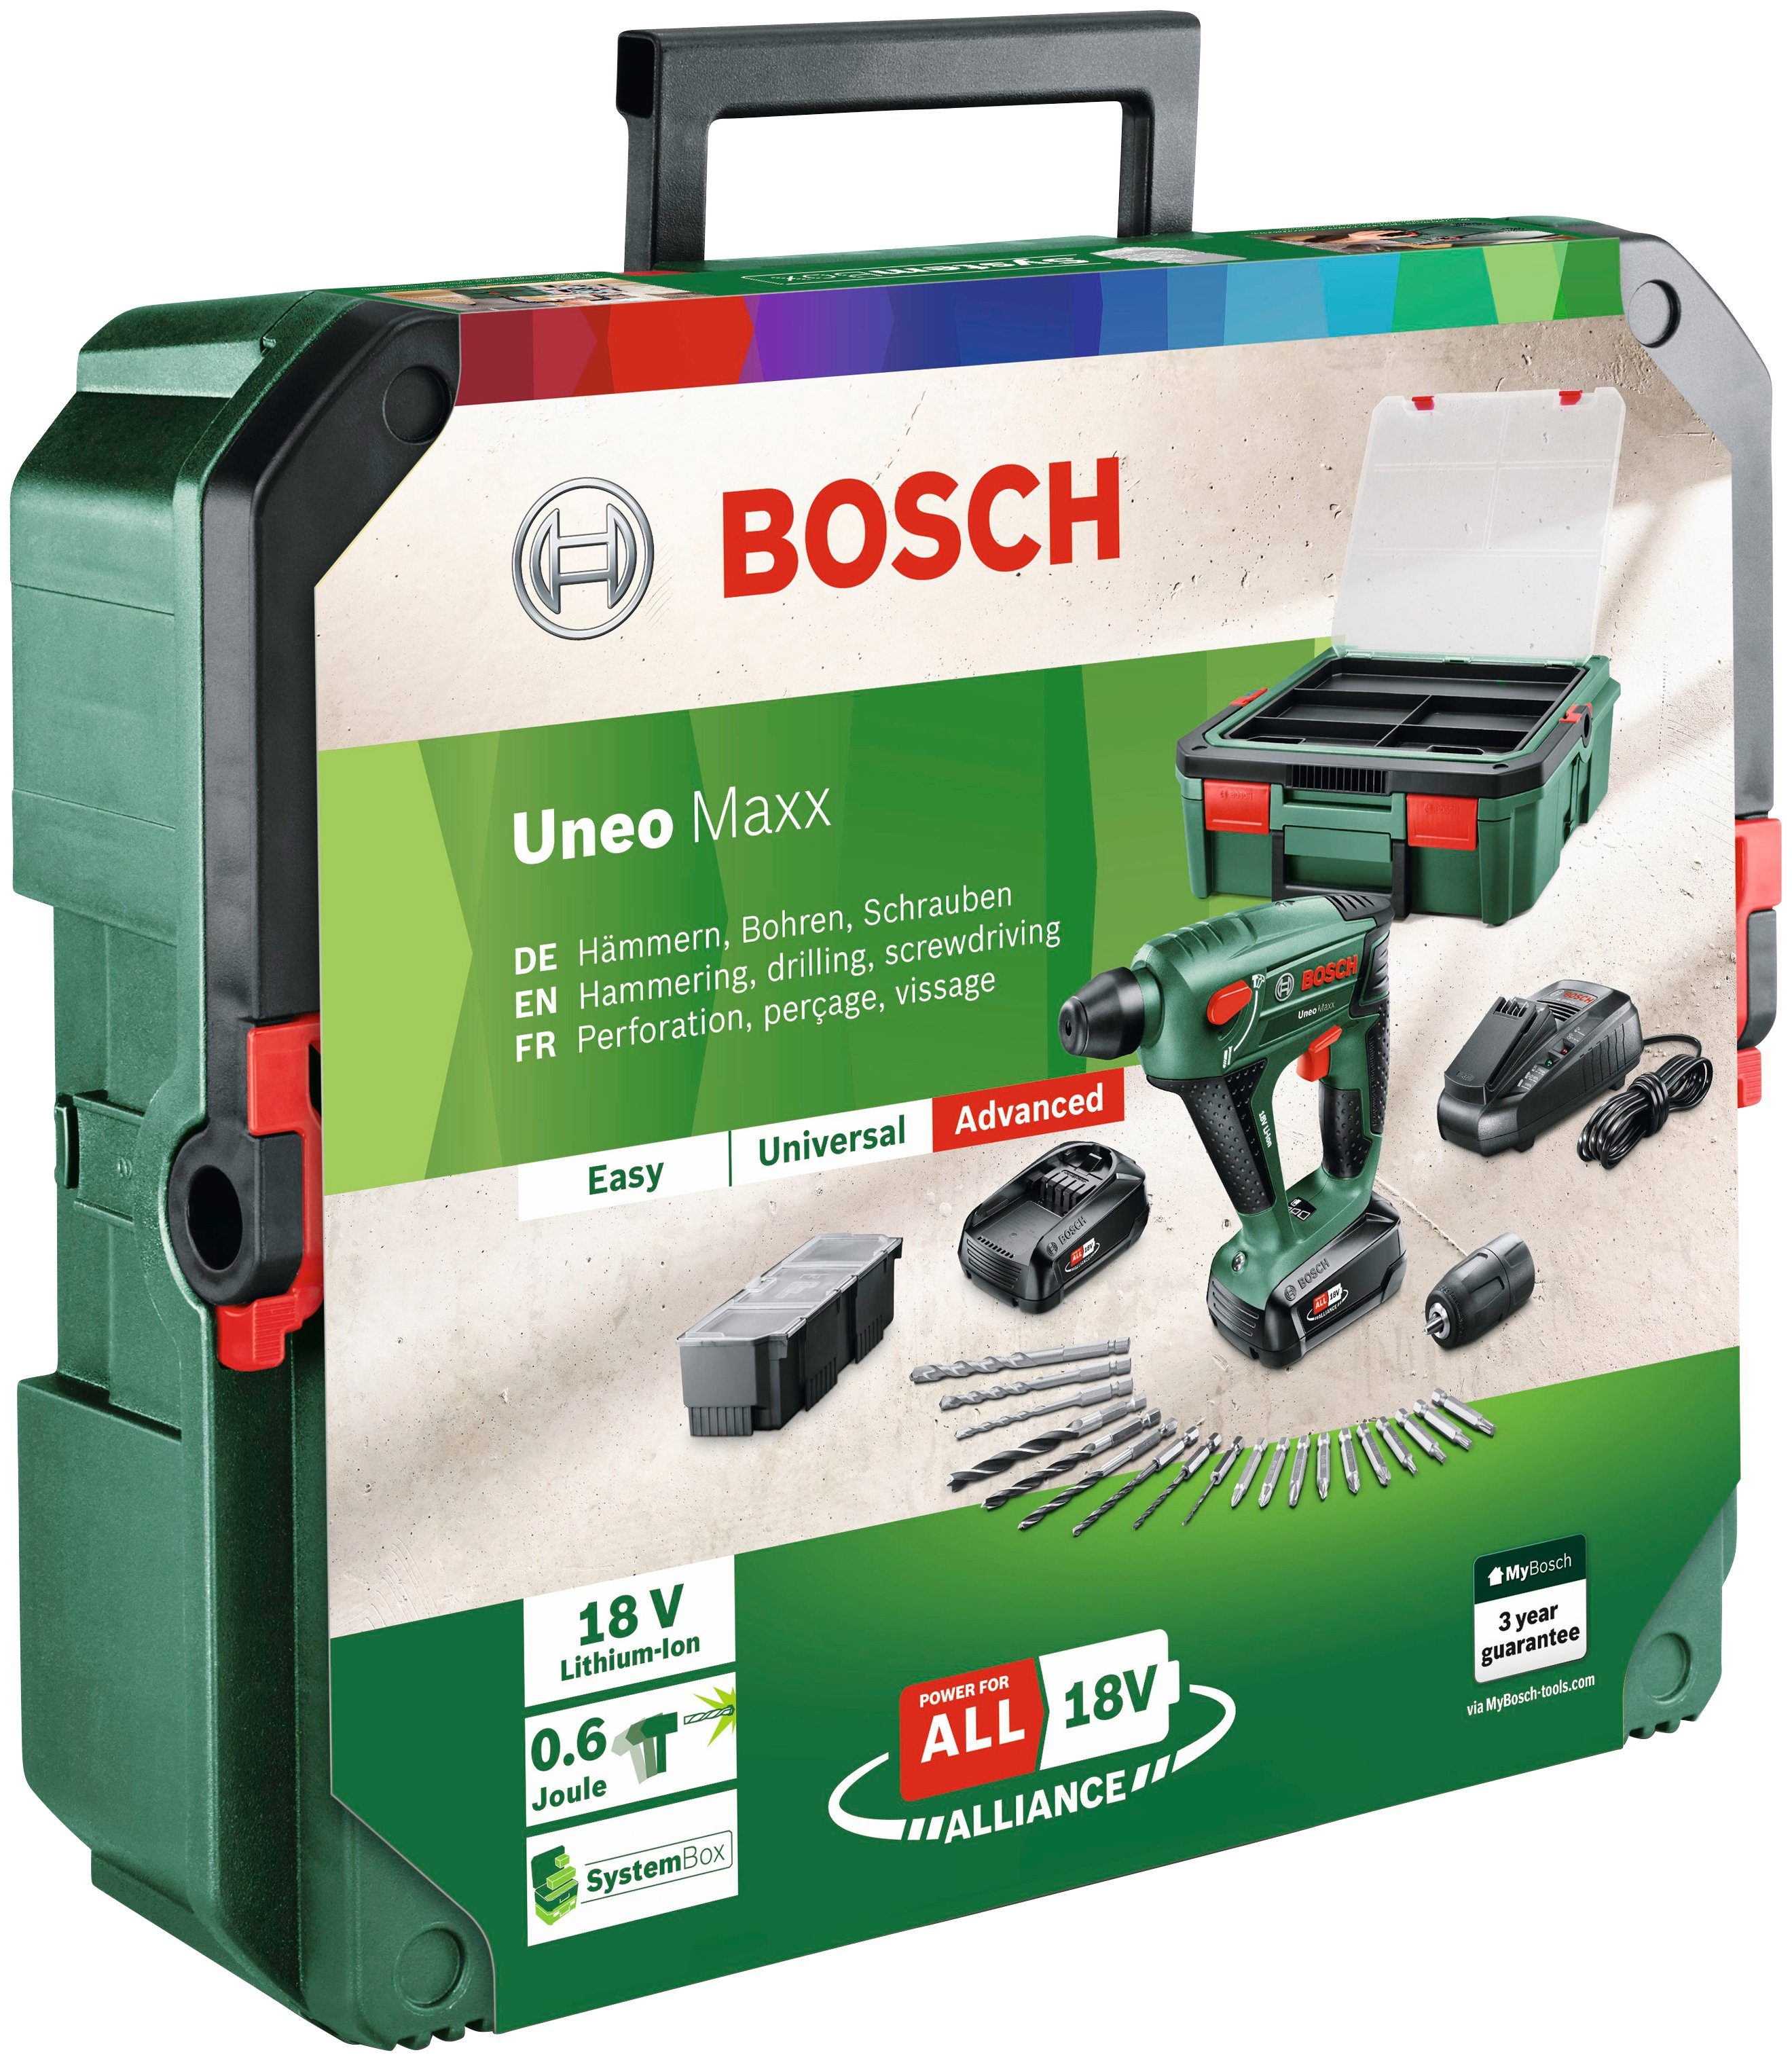 Bosch Home & Garden Akku-Bohrhammer + mit SystemBox, Maxx 2 Ladegerät Uneo Akkus und